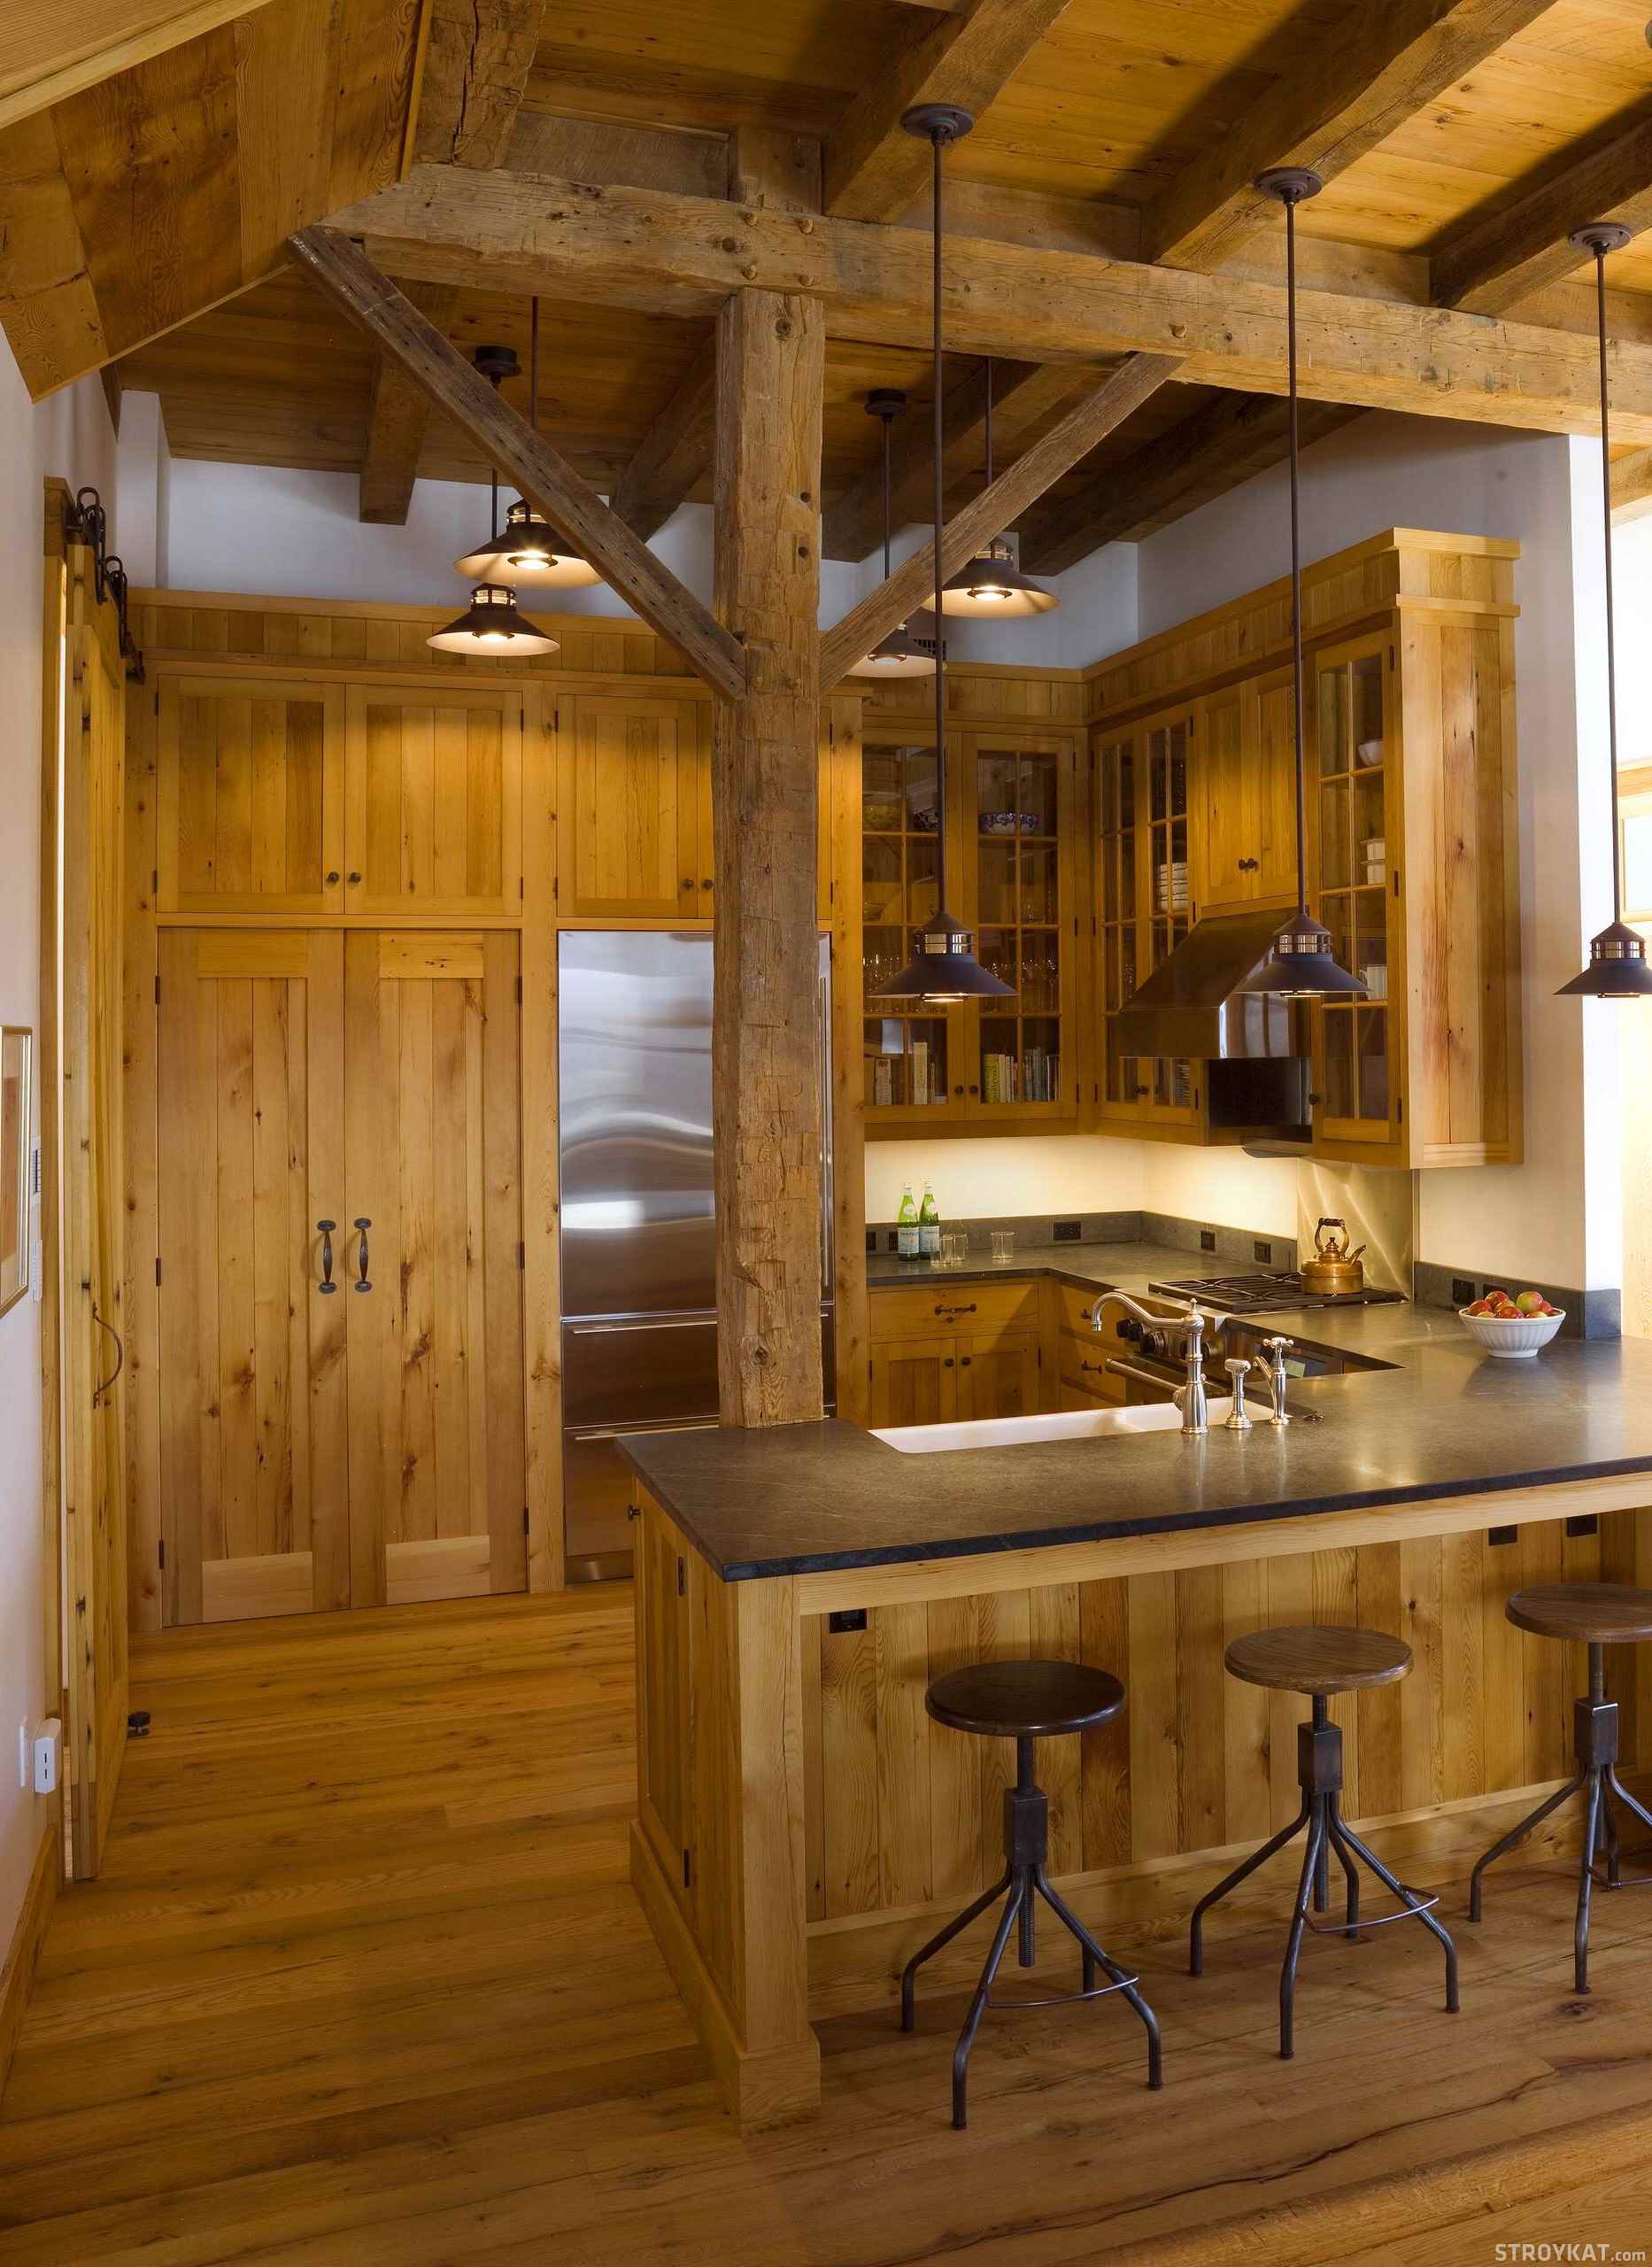 the idea of ​​a bright rustic style kitchen interior